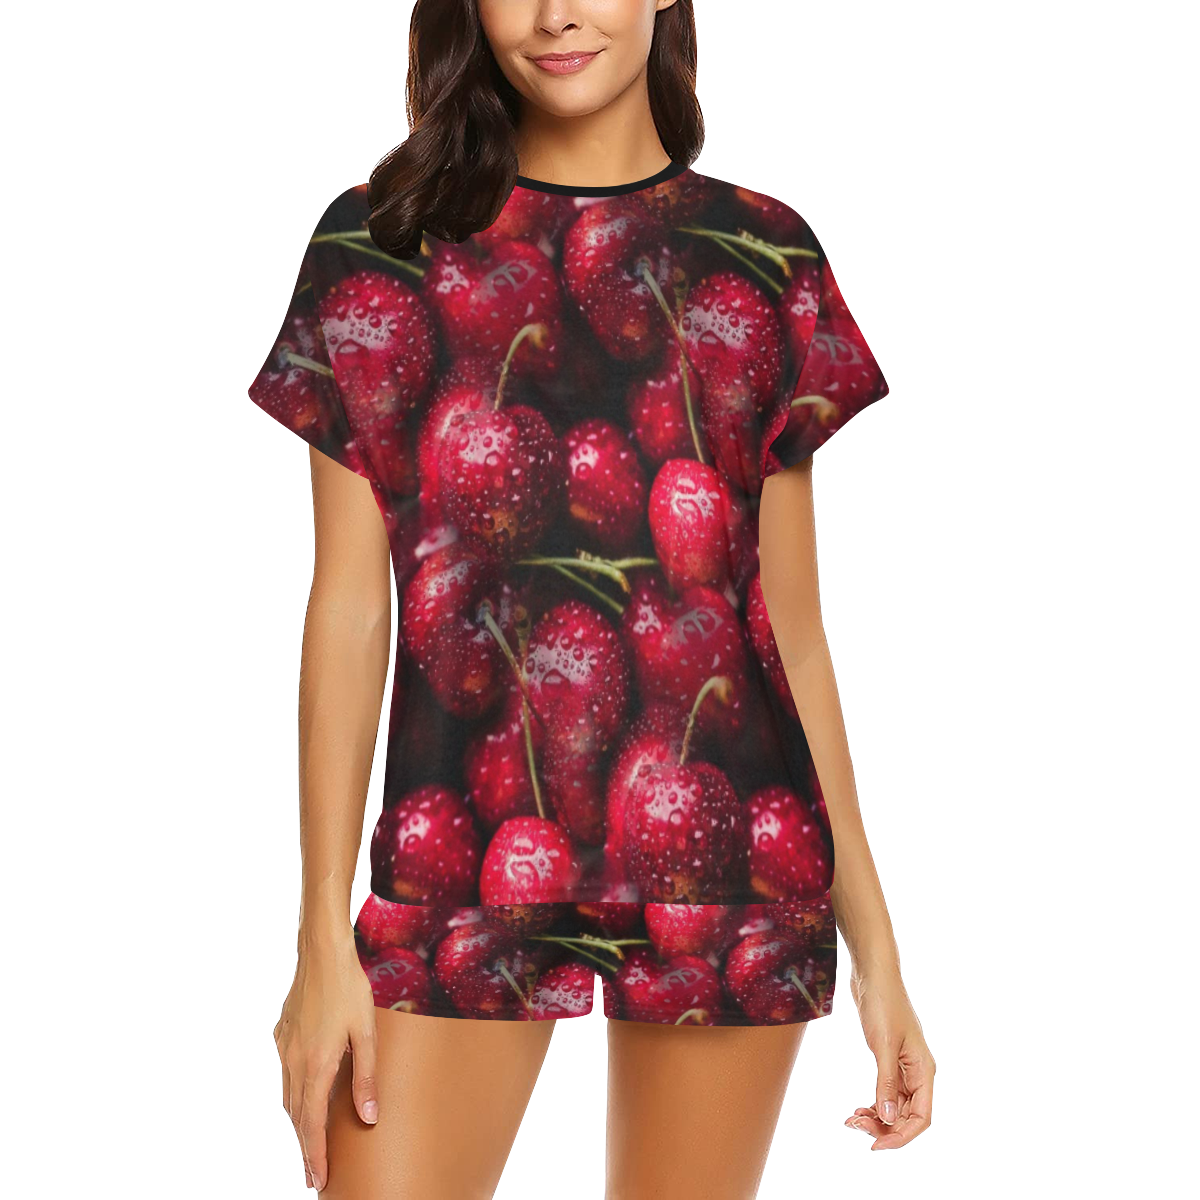 Cherry by Artdream Women's Short Pajama Set